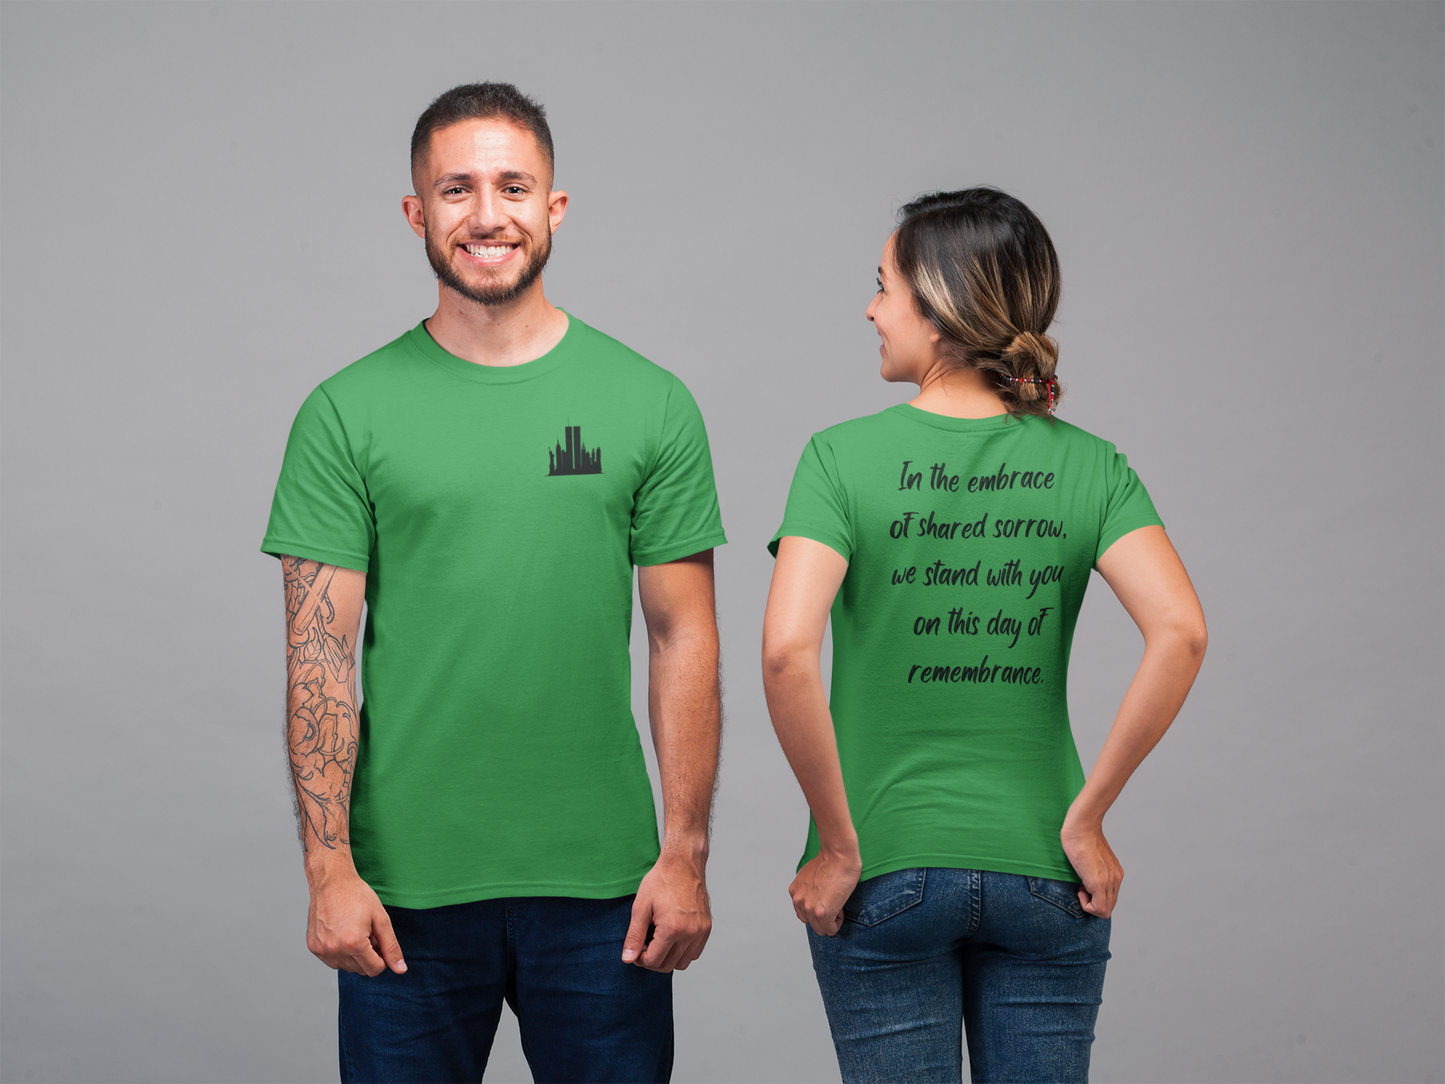 Recuerde siempre, estamos con usted - Camiseta unisex para hombre y mujer